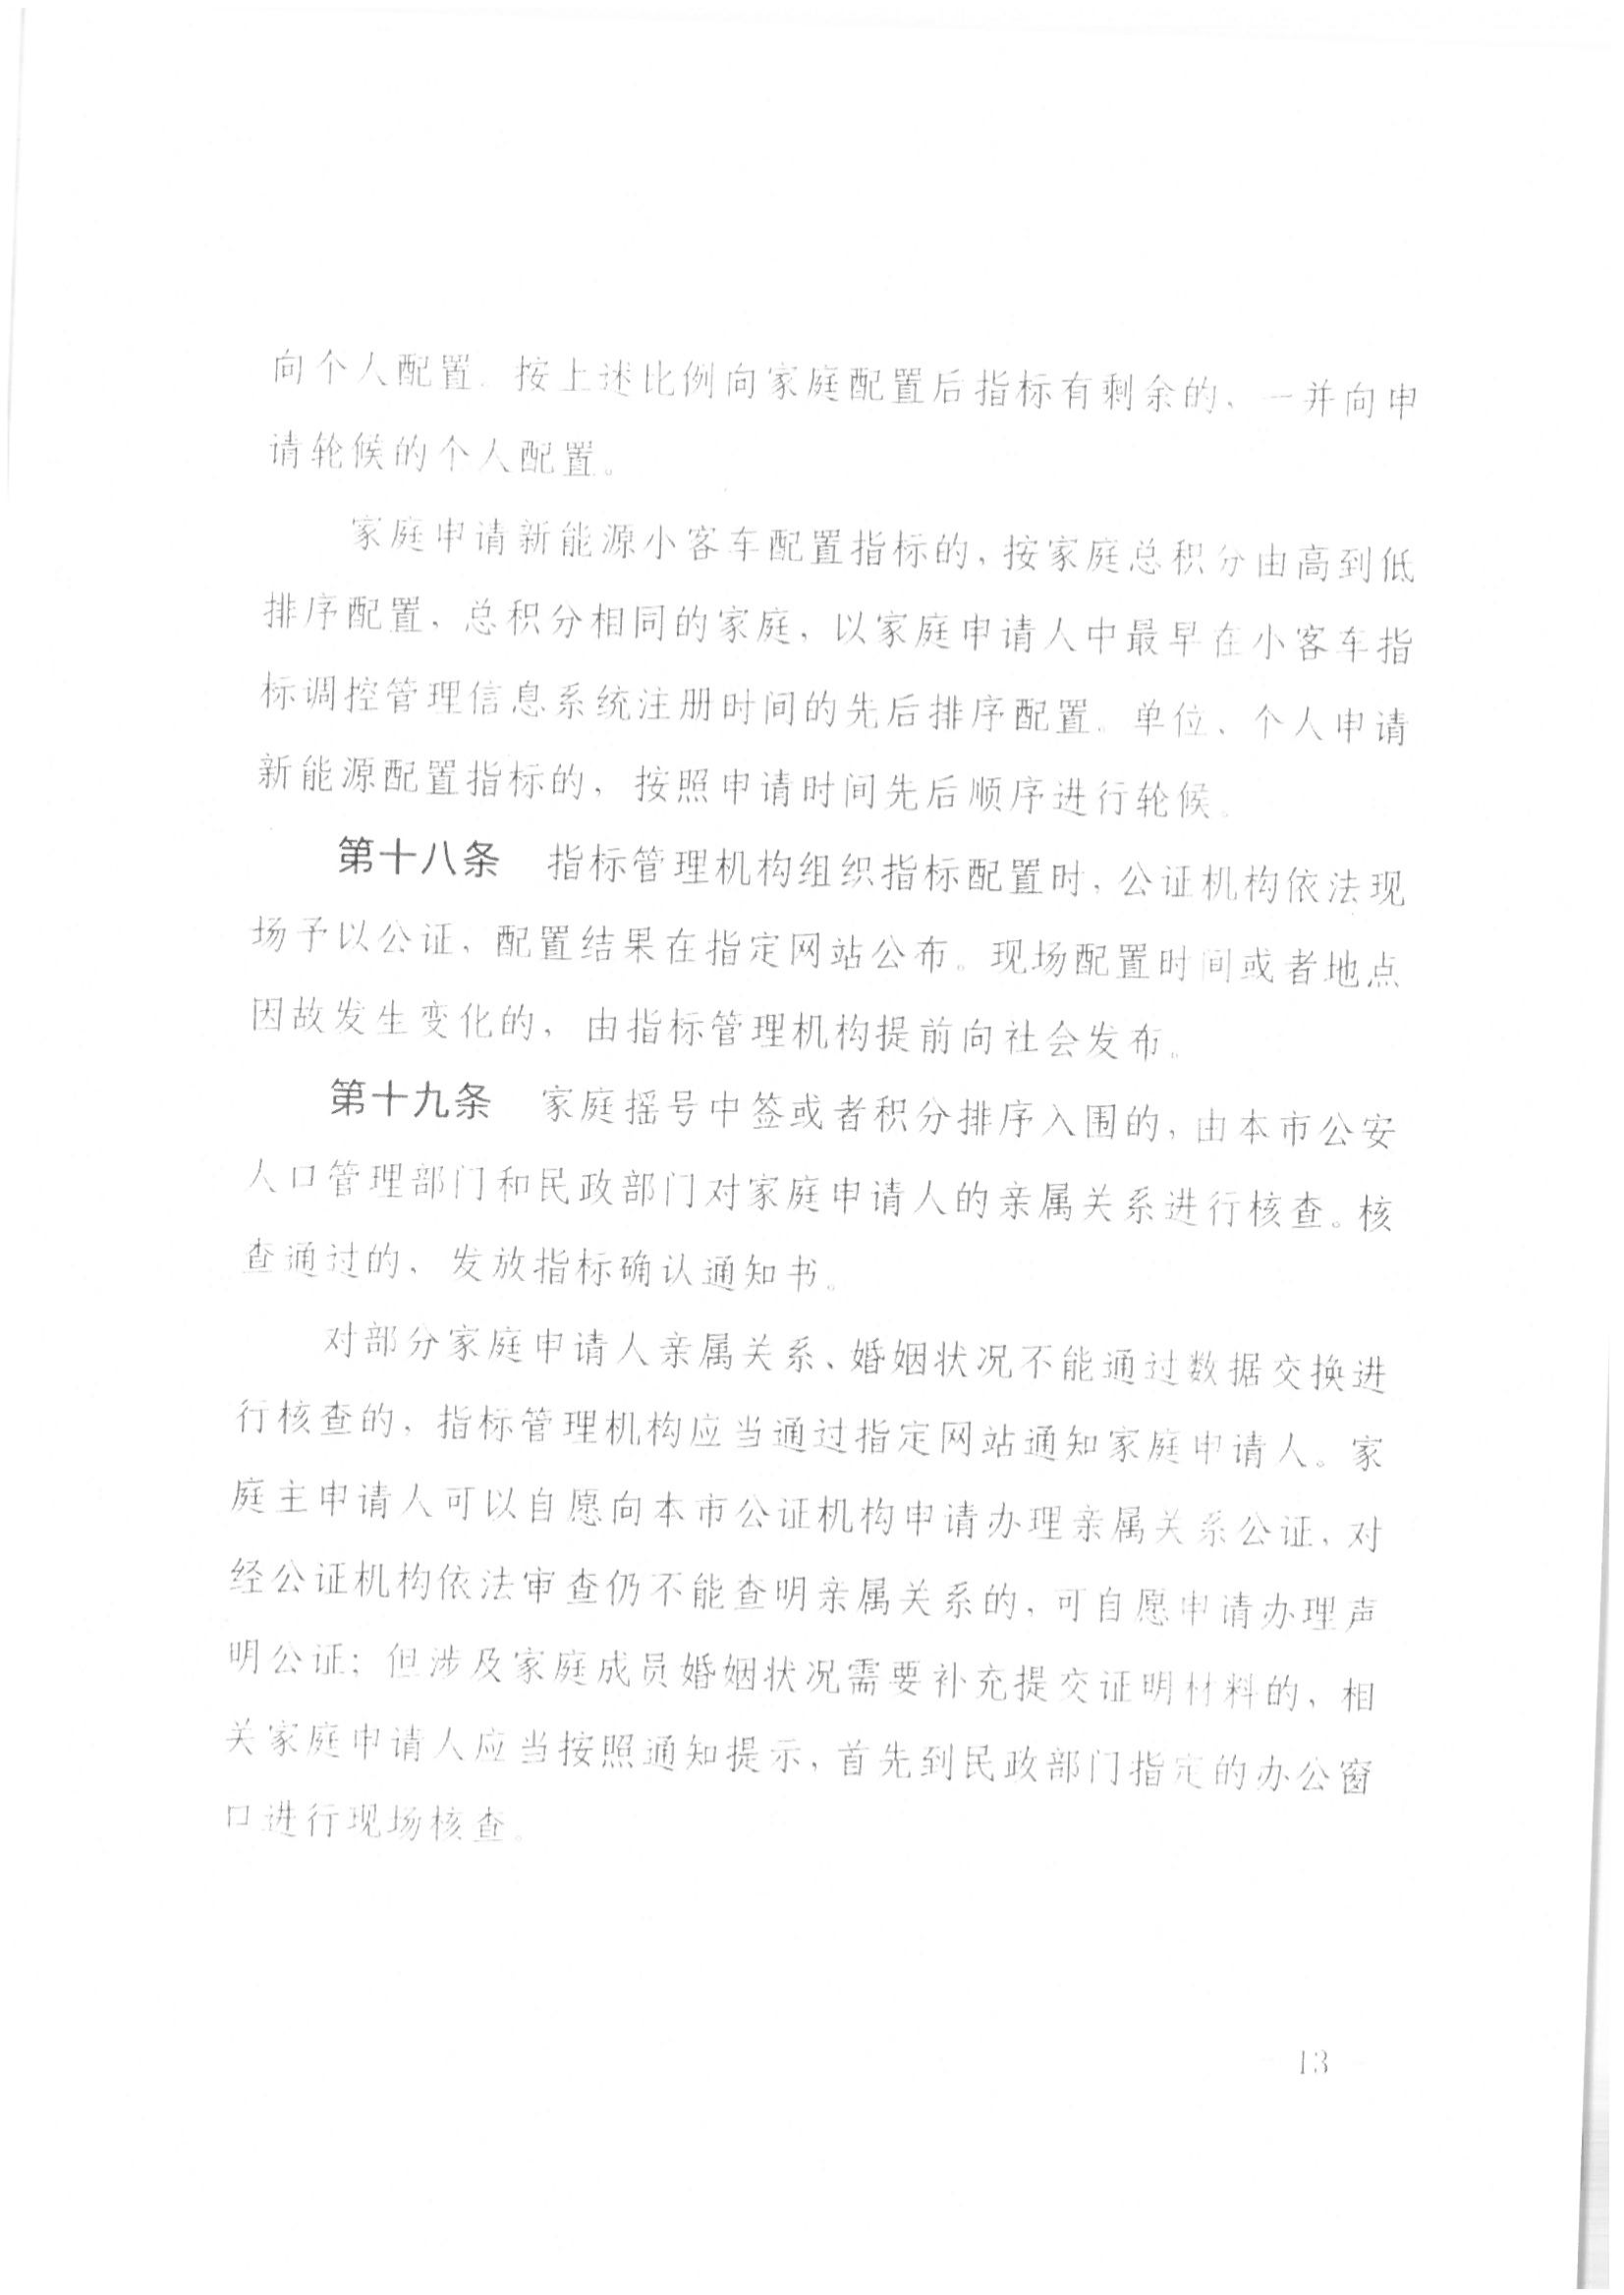 京公协字【2021】21号 北京市公证协会规范执业指引【第13号】_36